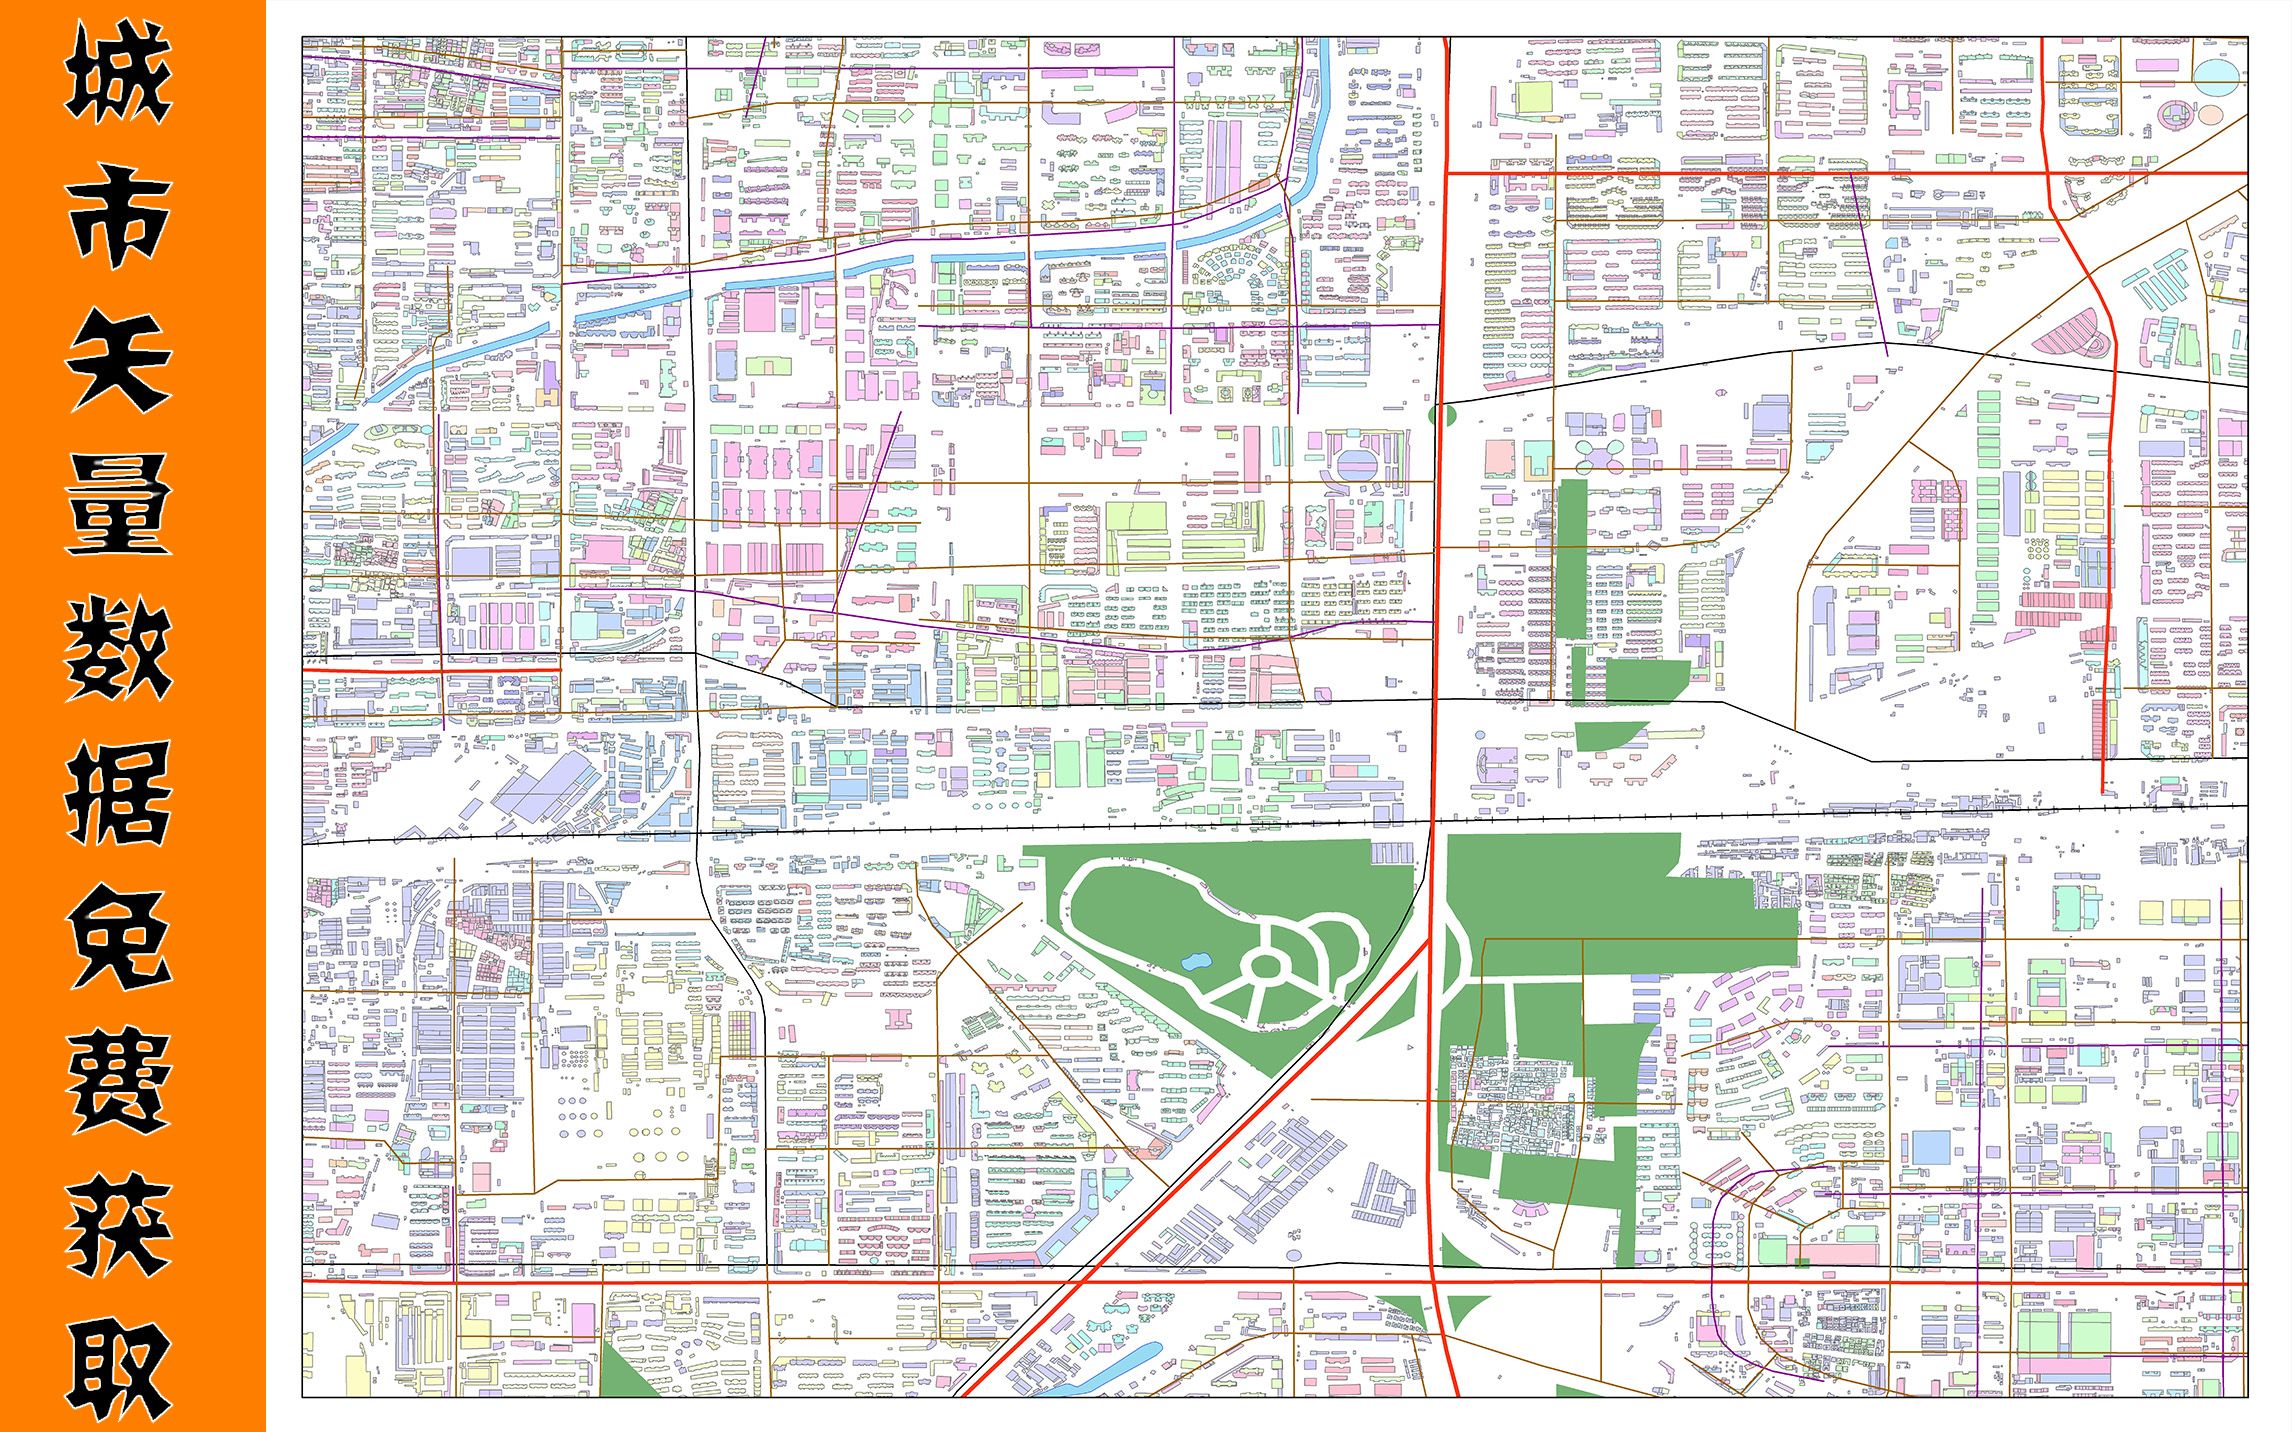 城市矢量数据免费获取方式，包括建筑轮廓、道路、绿化、水系、poi兴趣点等等